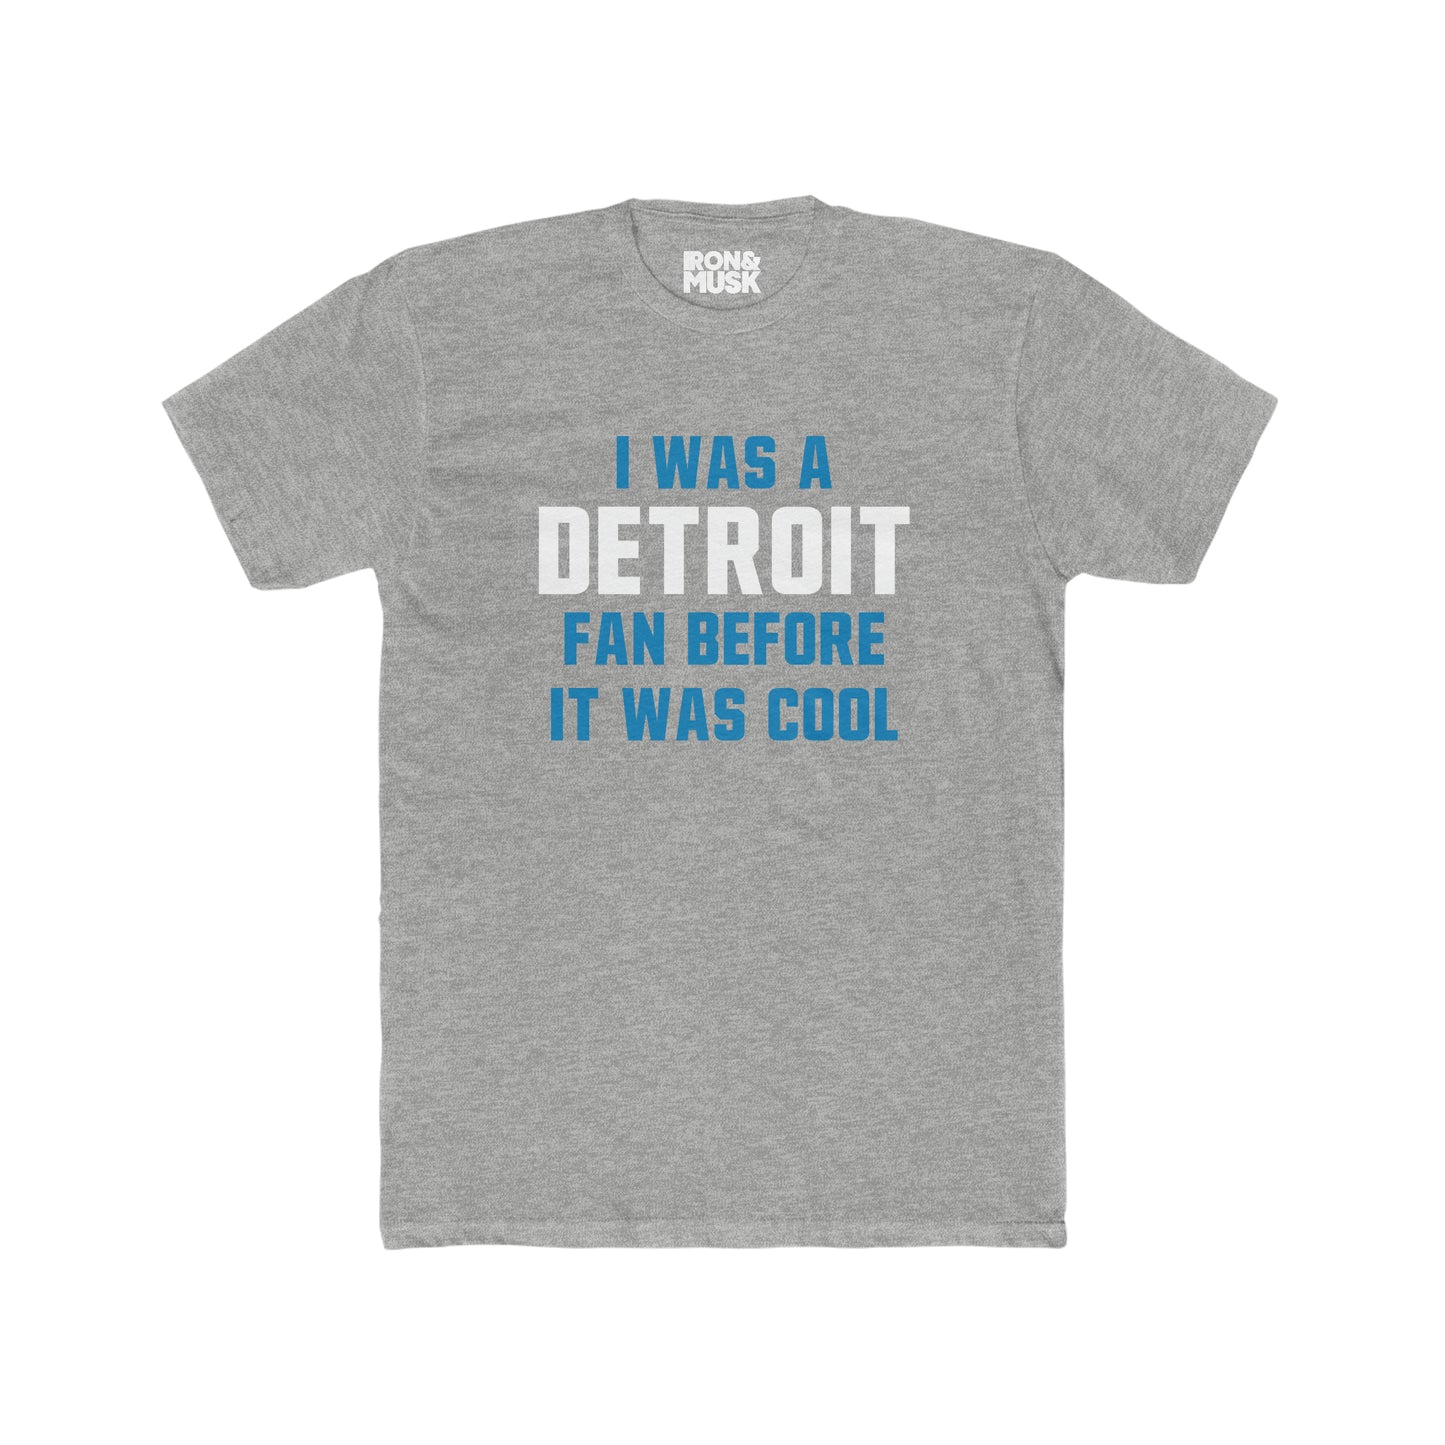 Detroit Football Fan - I was a Detroit fan before it was cool - Unisex Cotton Tee